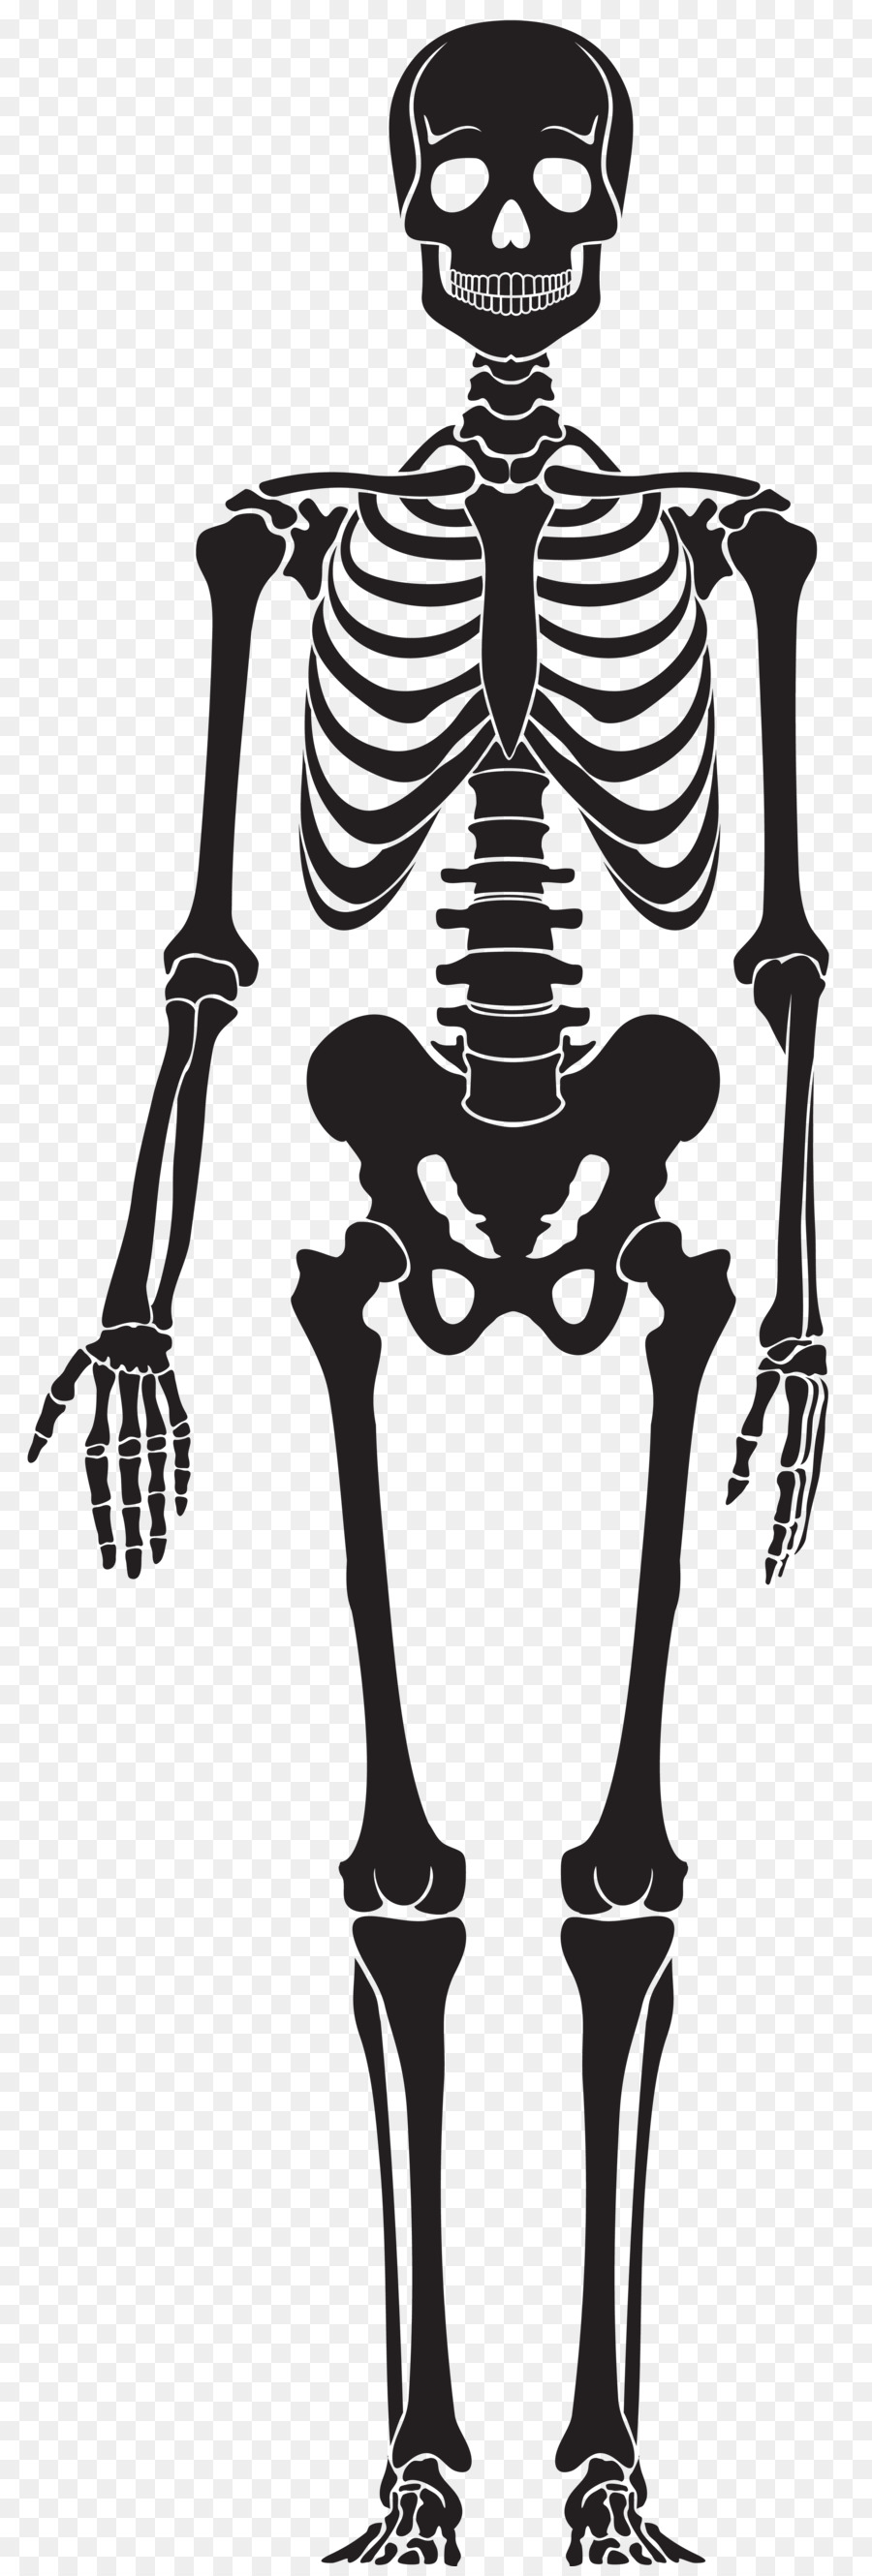 Human skeleton Skull - stump png download - 2717*8000 - Free Transparent Human Skeleton png Download.